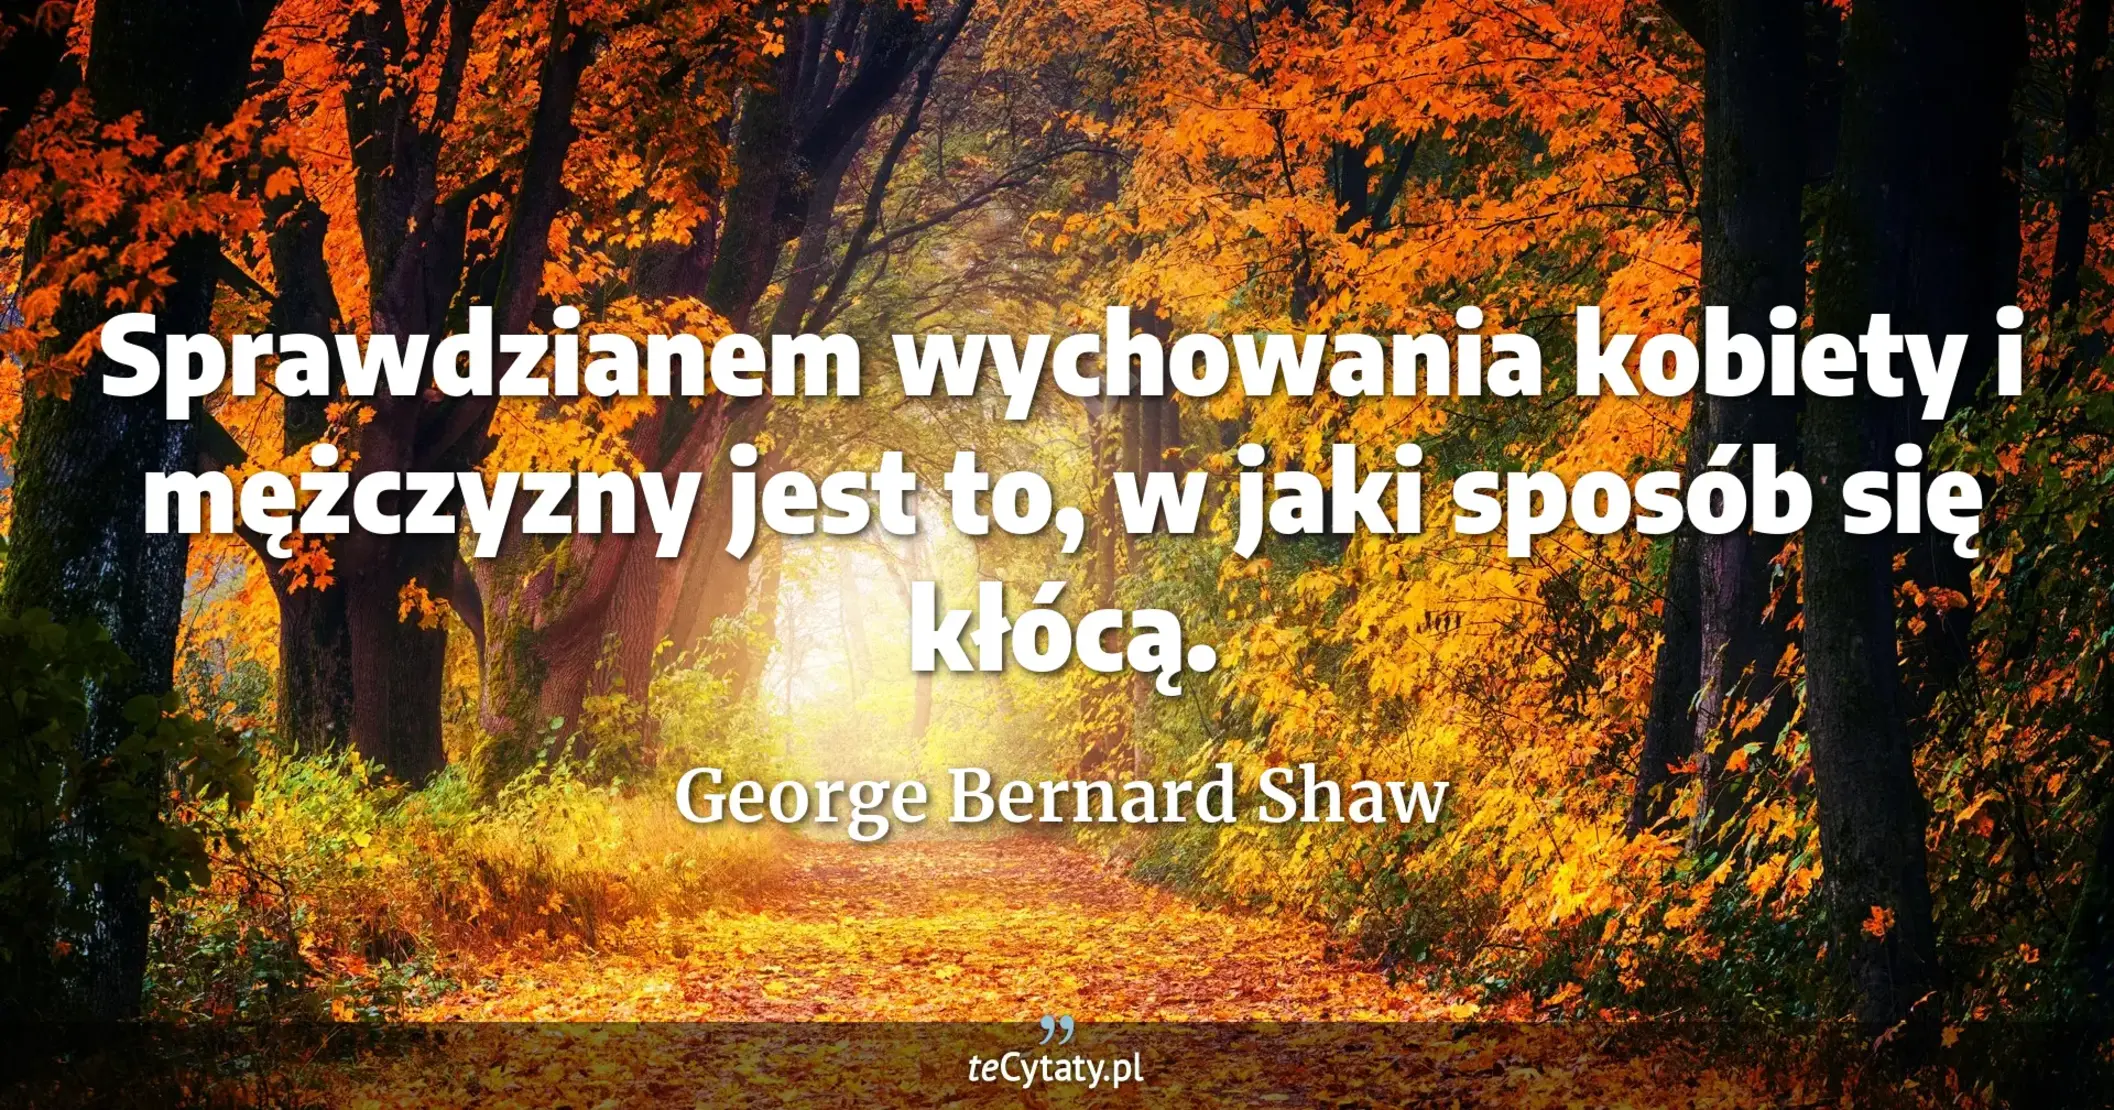 Sprawdzianem wychowania kobiety i mężczyzny jest to, w jaki sposób się kłócą. - George Bernard Shaw